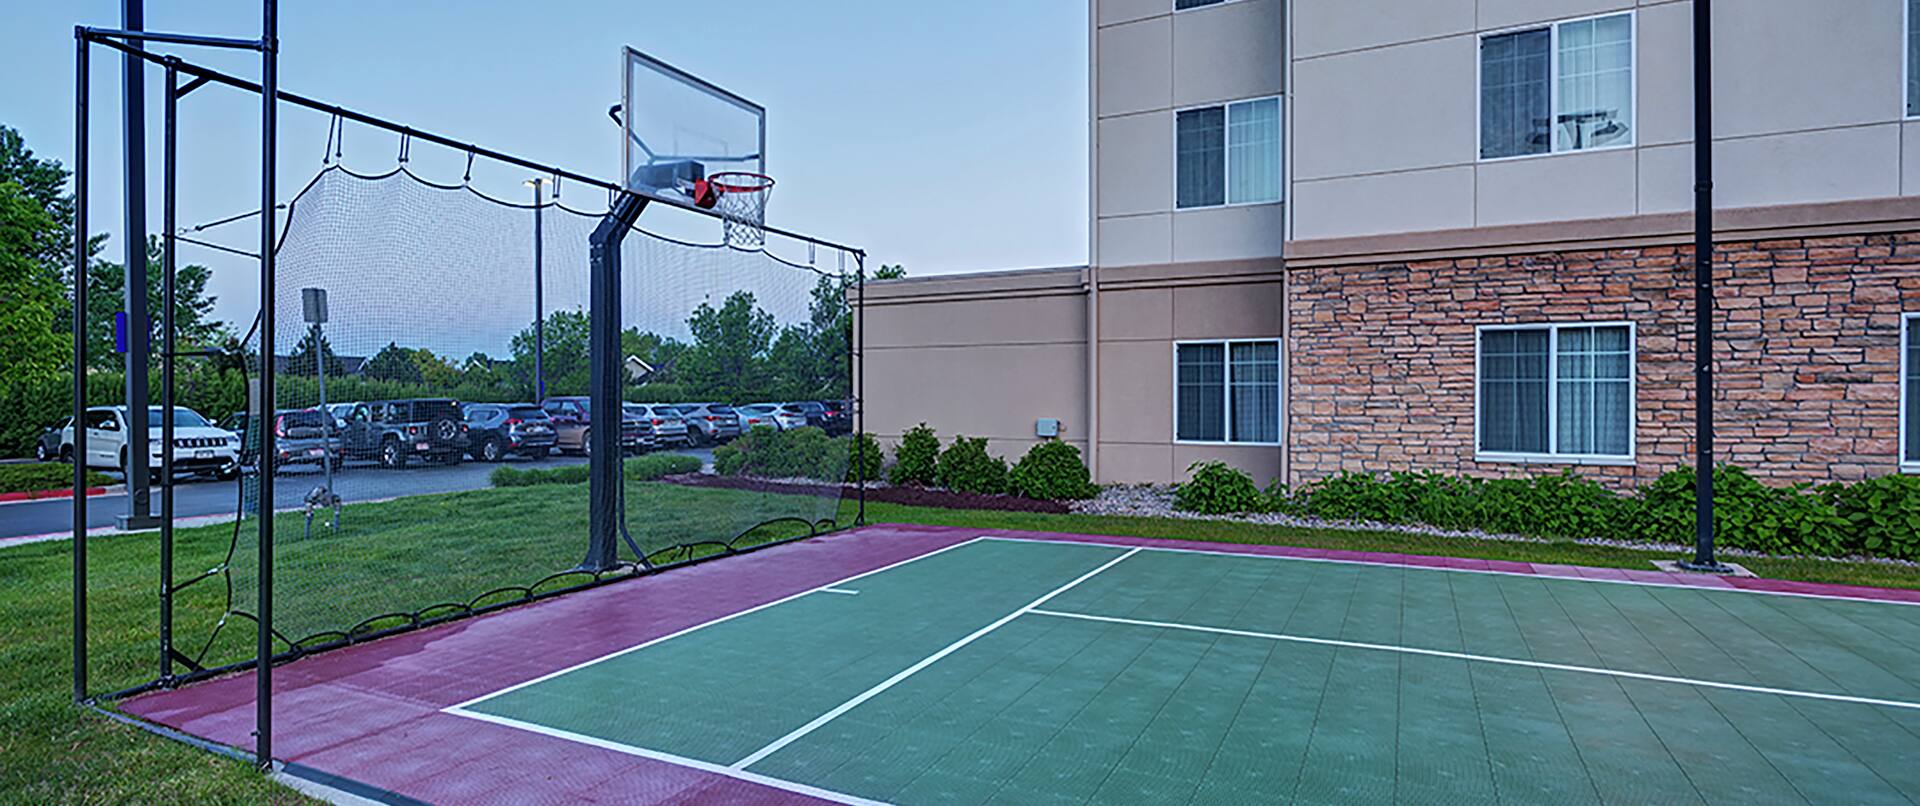 Outdoor Sport Court